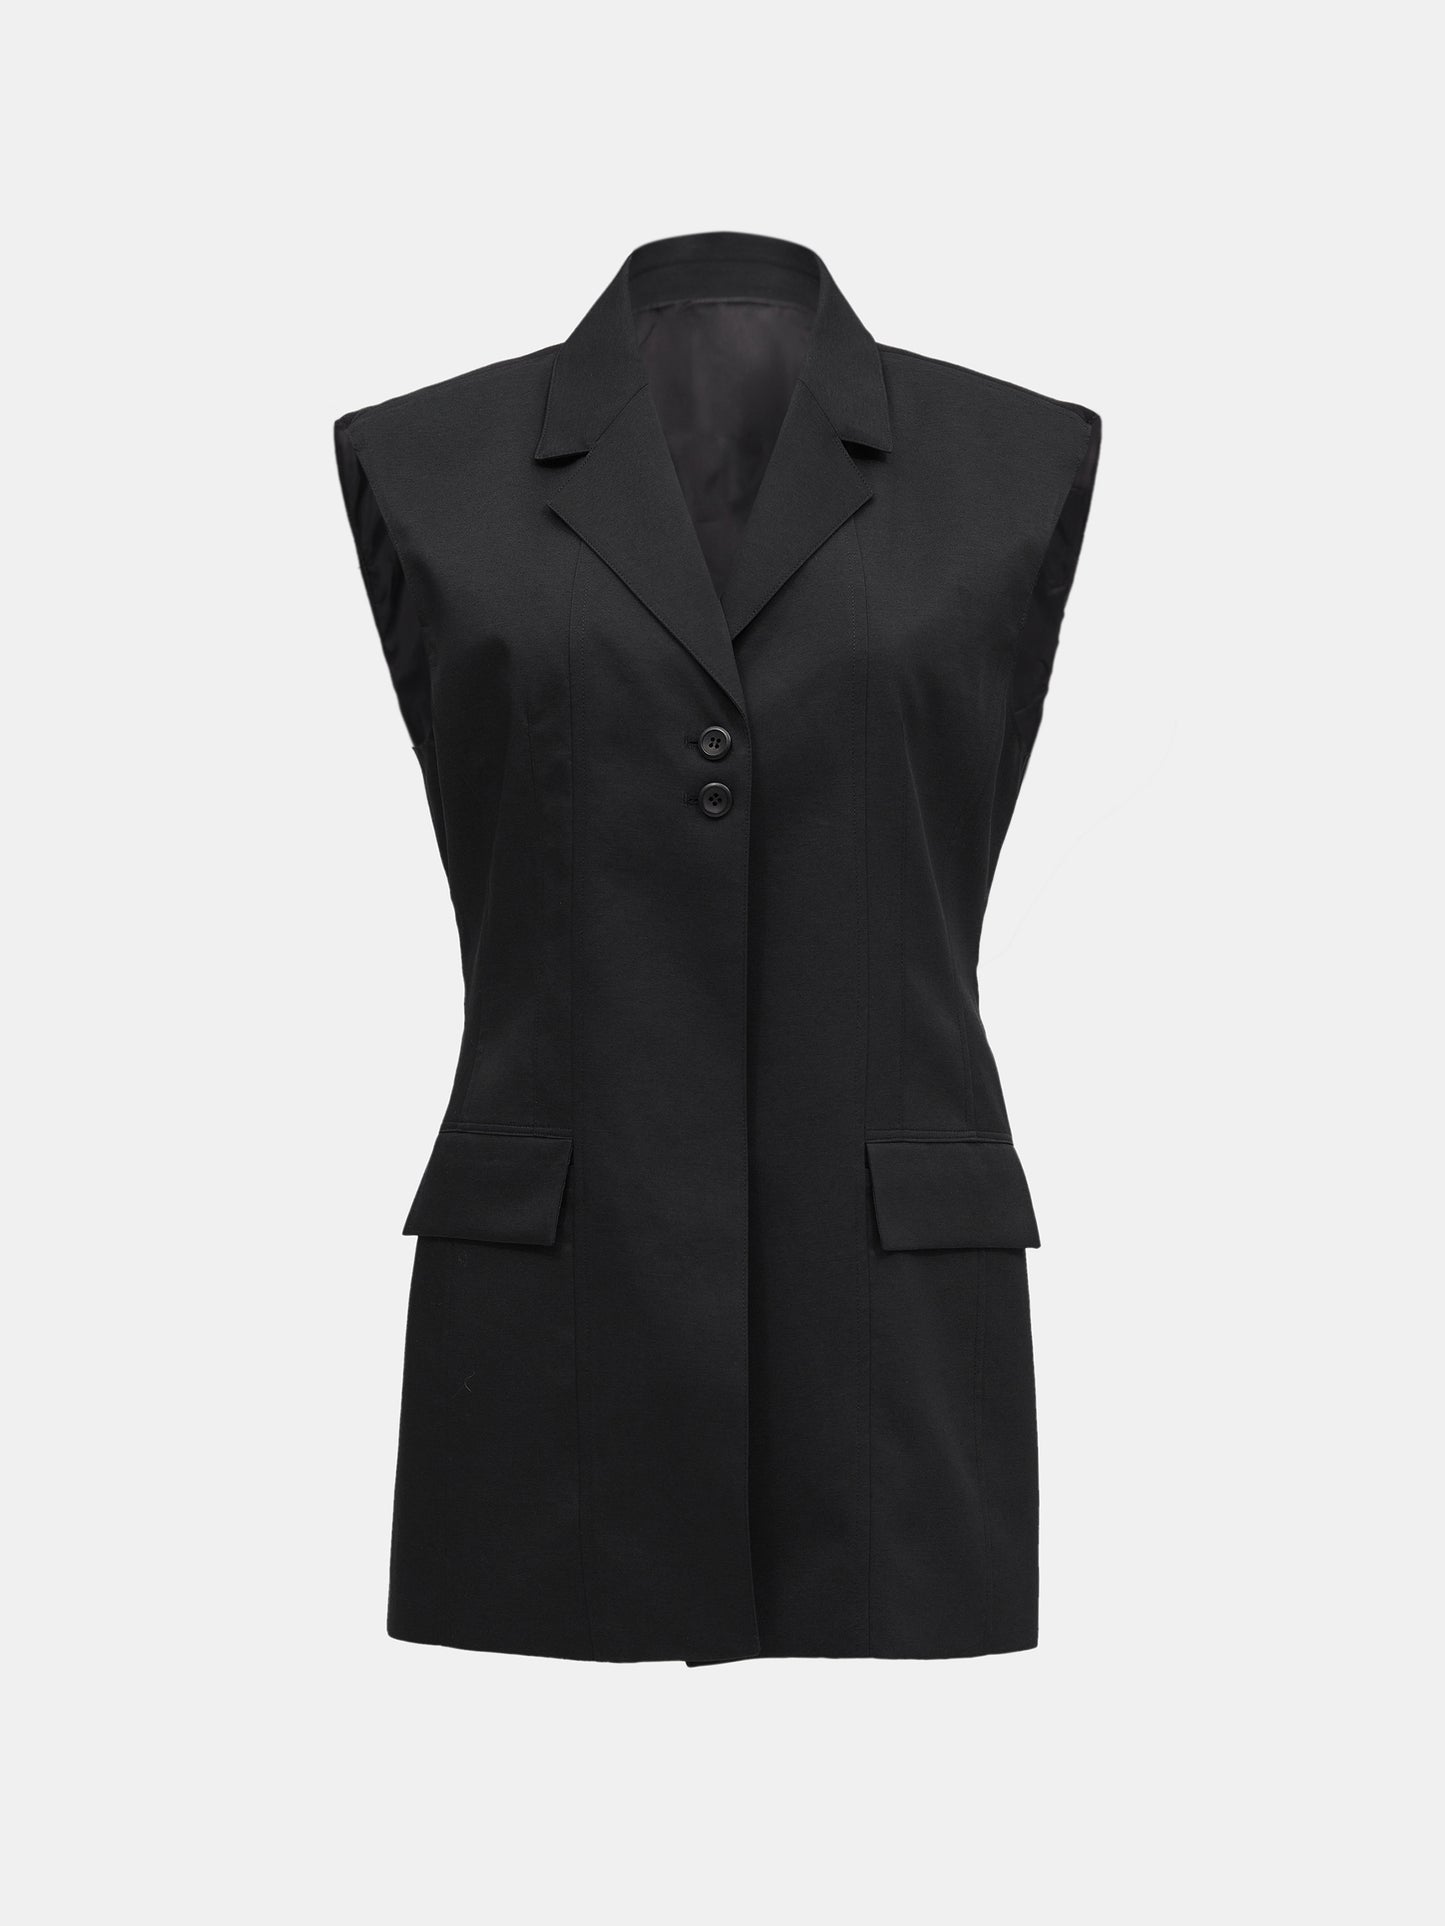 Lounge Suit Vest, Black